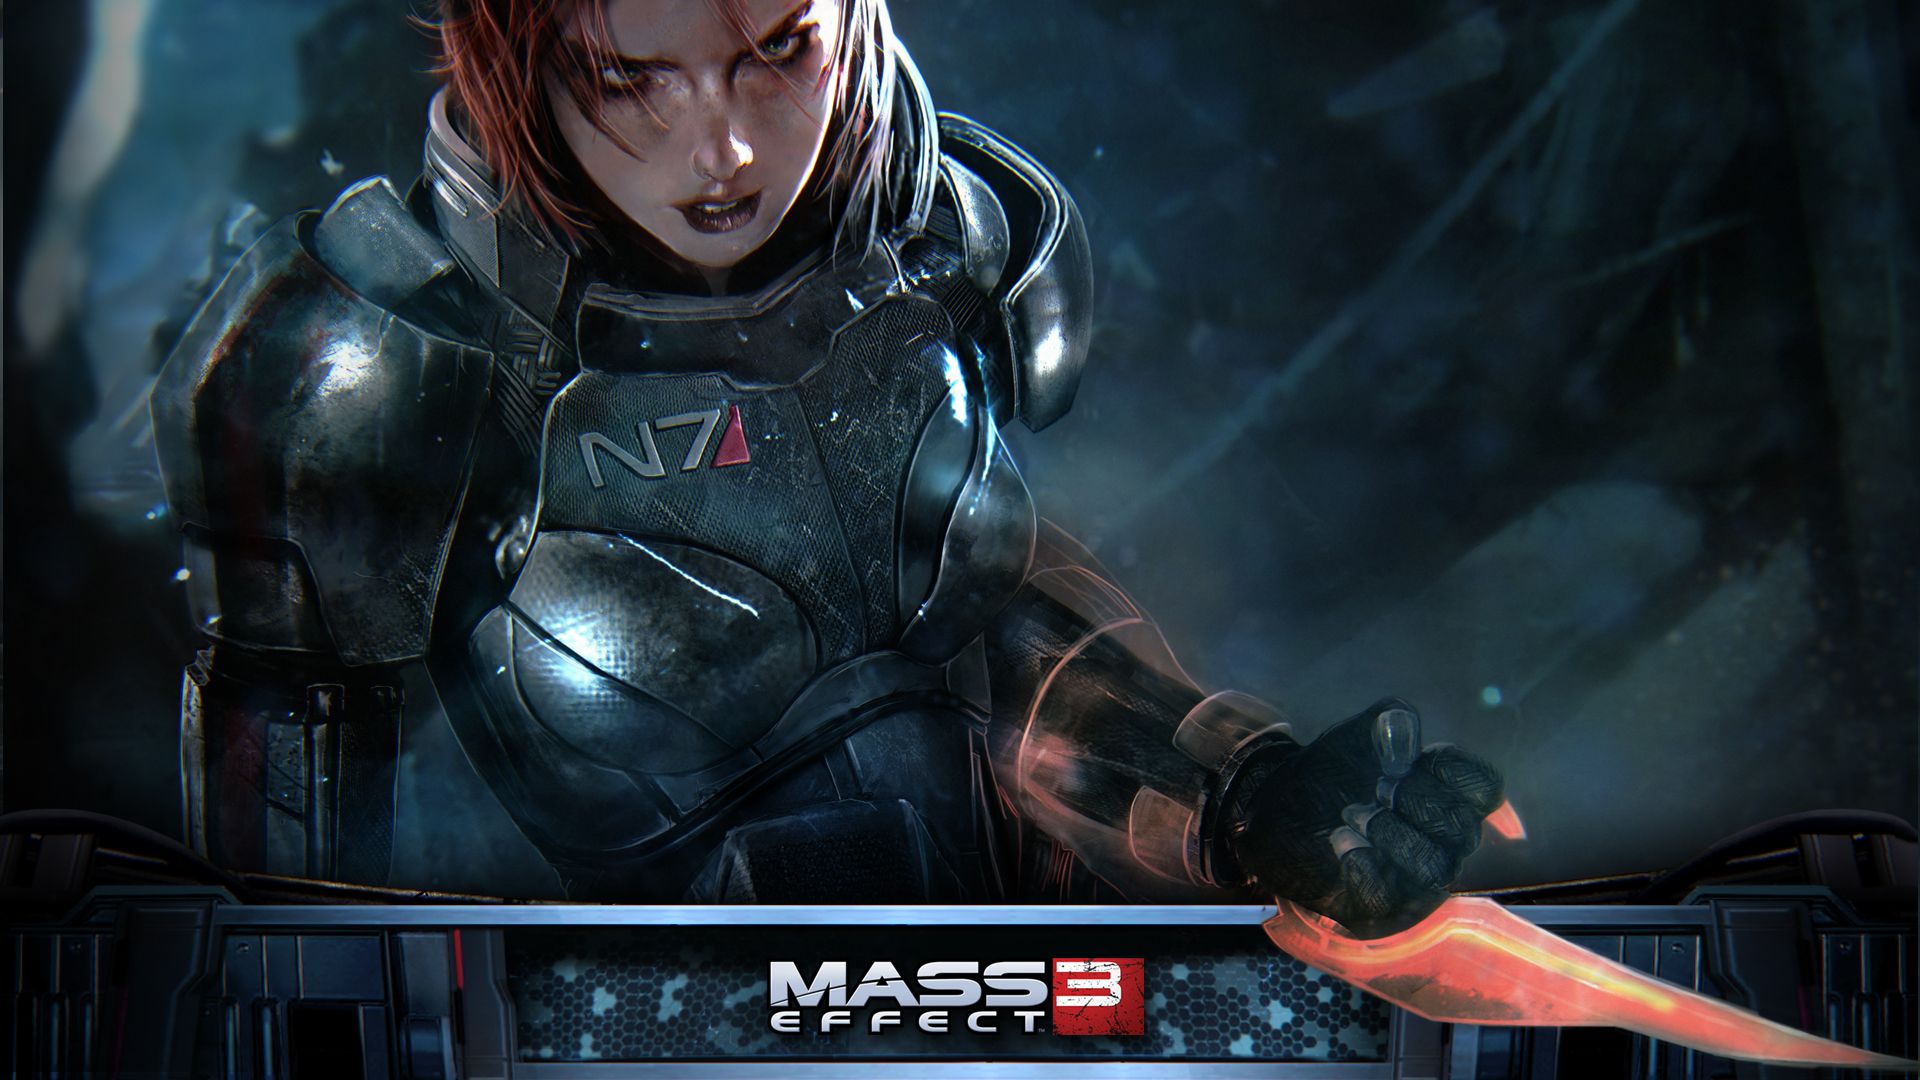 Mass Effect - Commander Shepard - wallpaper-011-femshep-1920x1080